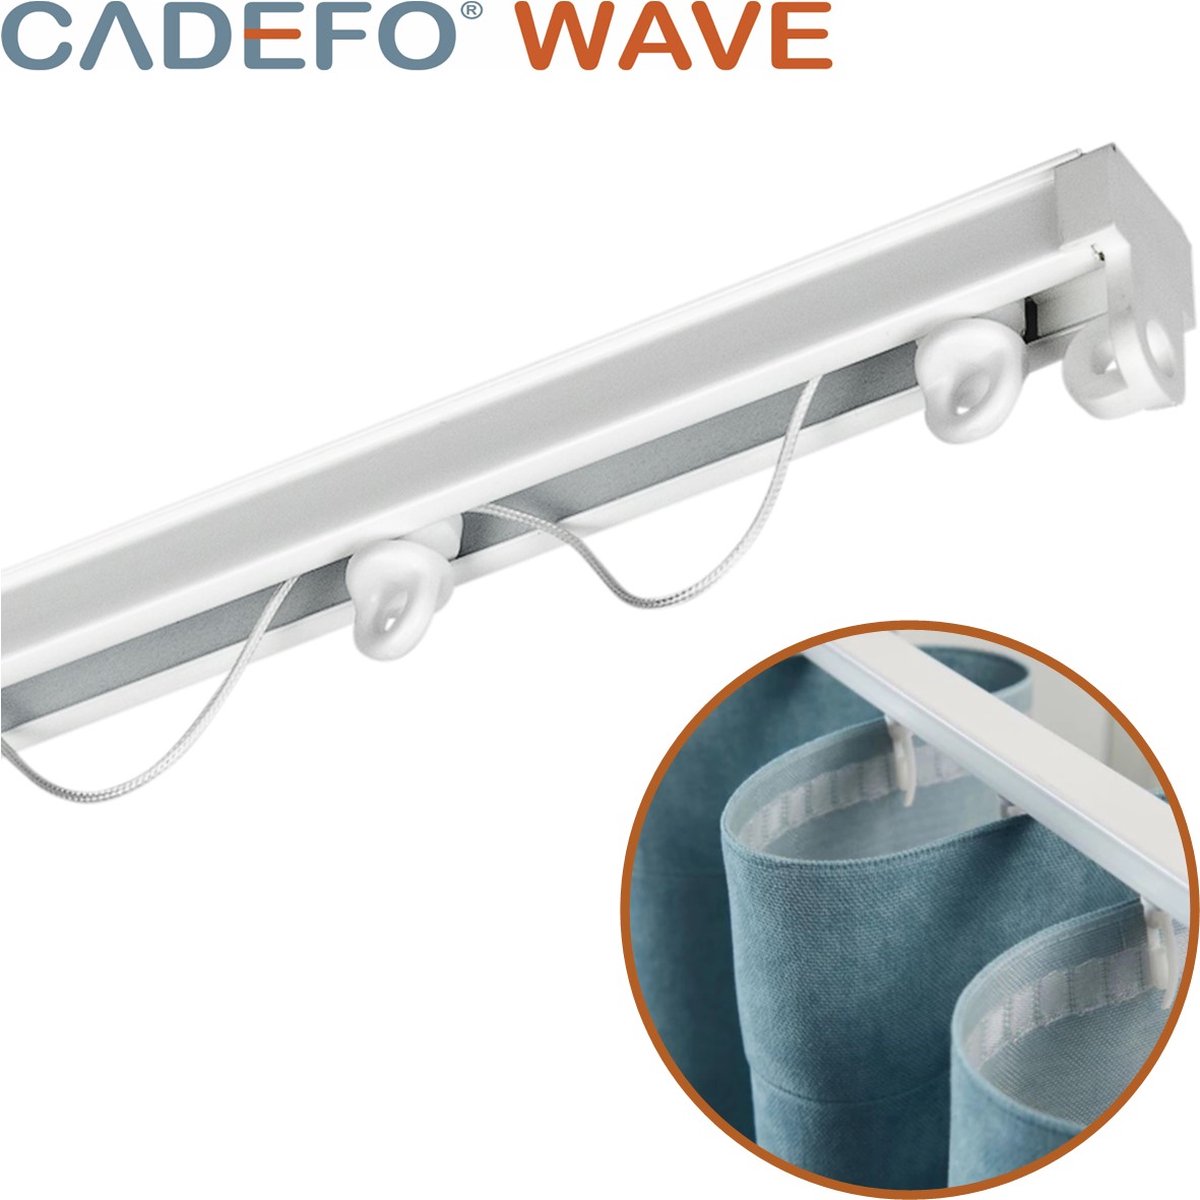 CADEFO WAVE (501 - 550 cm) Gordijnrails - Compleet op maat! - UIT 1 STUK - Leverbaar tot 6 meter - Plafondbevestiging - Lengte 532 cm